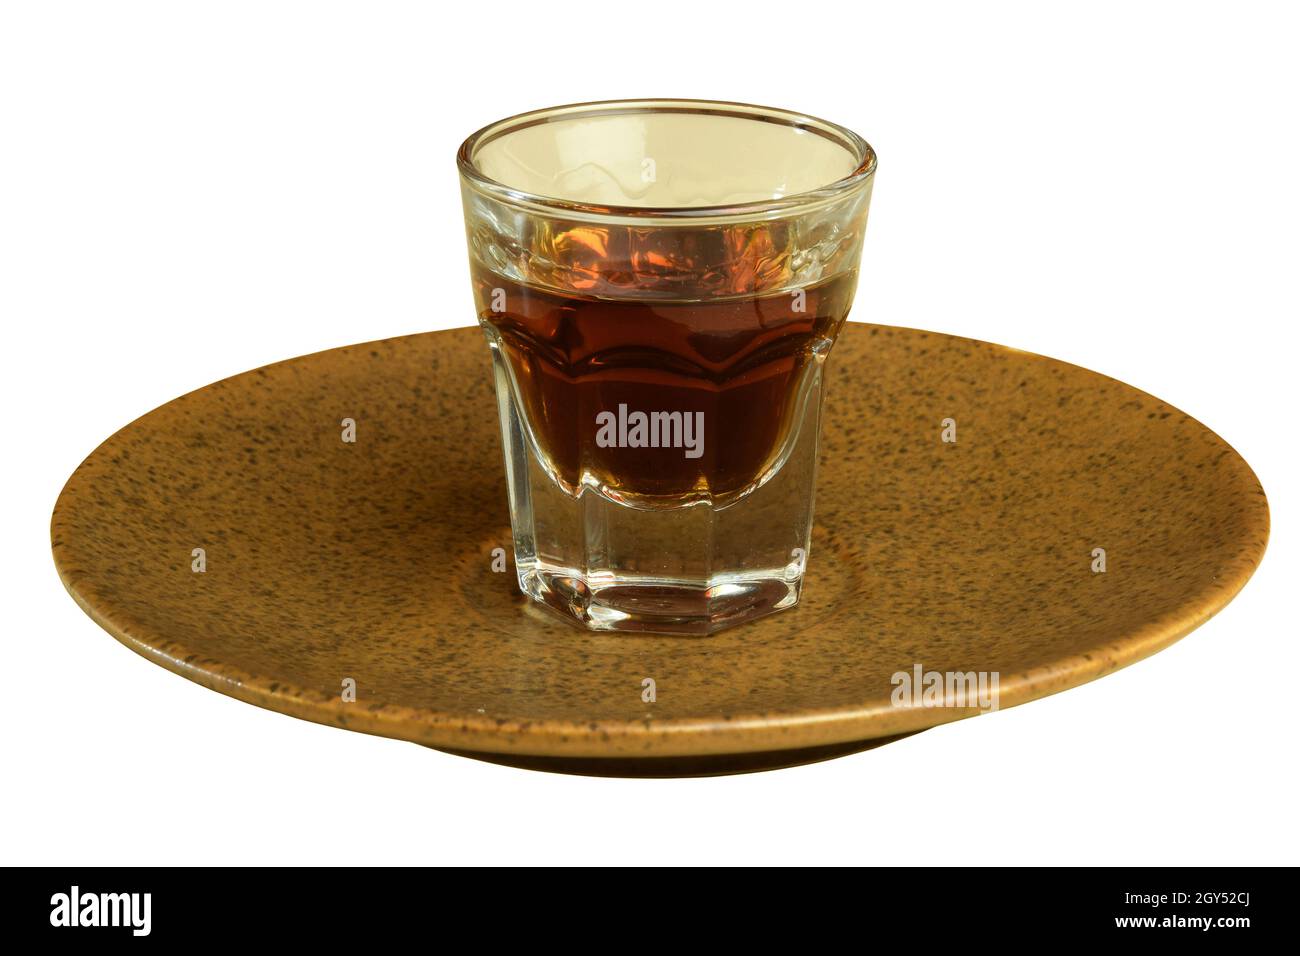 C'è un bicchiere di cognac su un piattino di ceramica marrone su sfondo bianco. Primo piano fotografato. Foto Stock